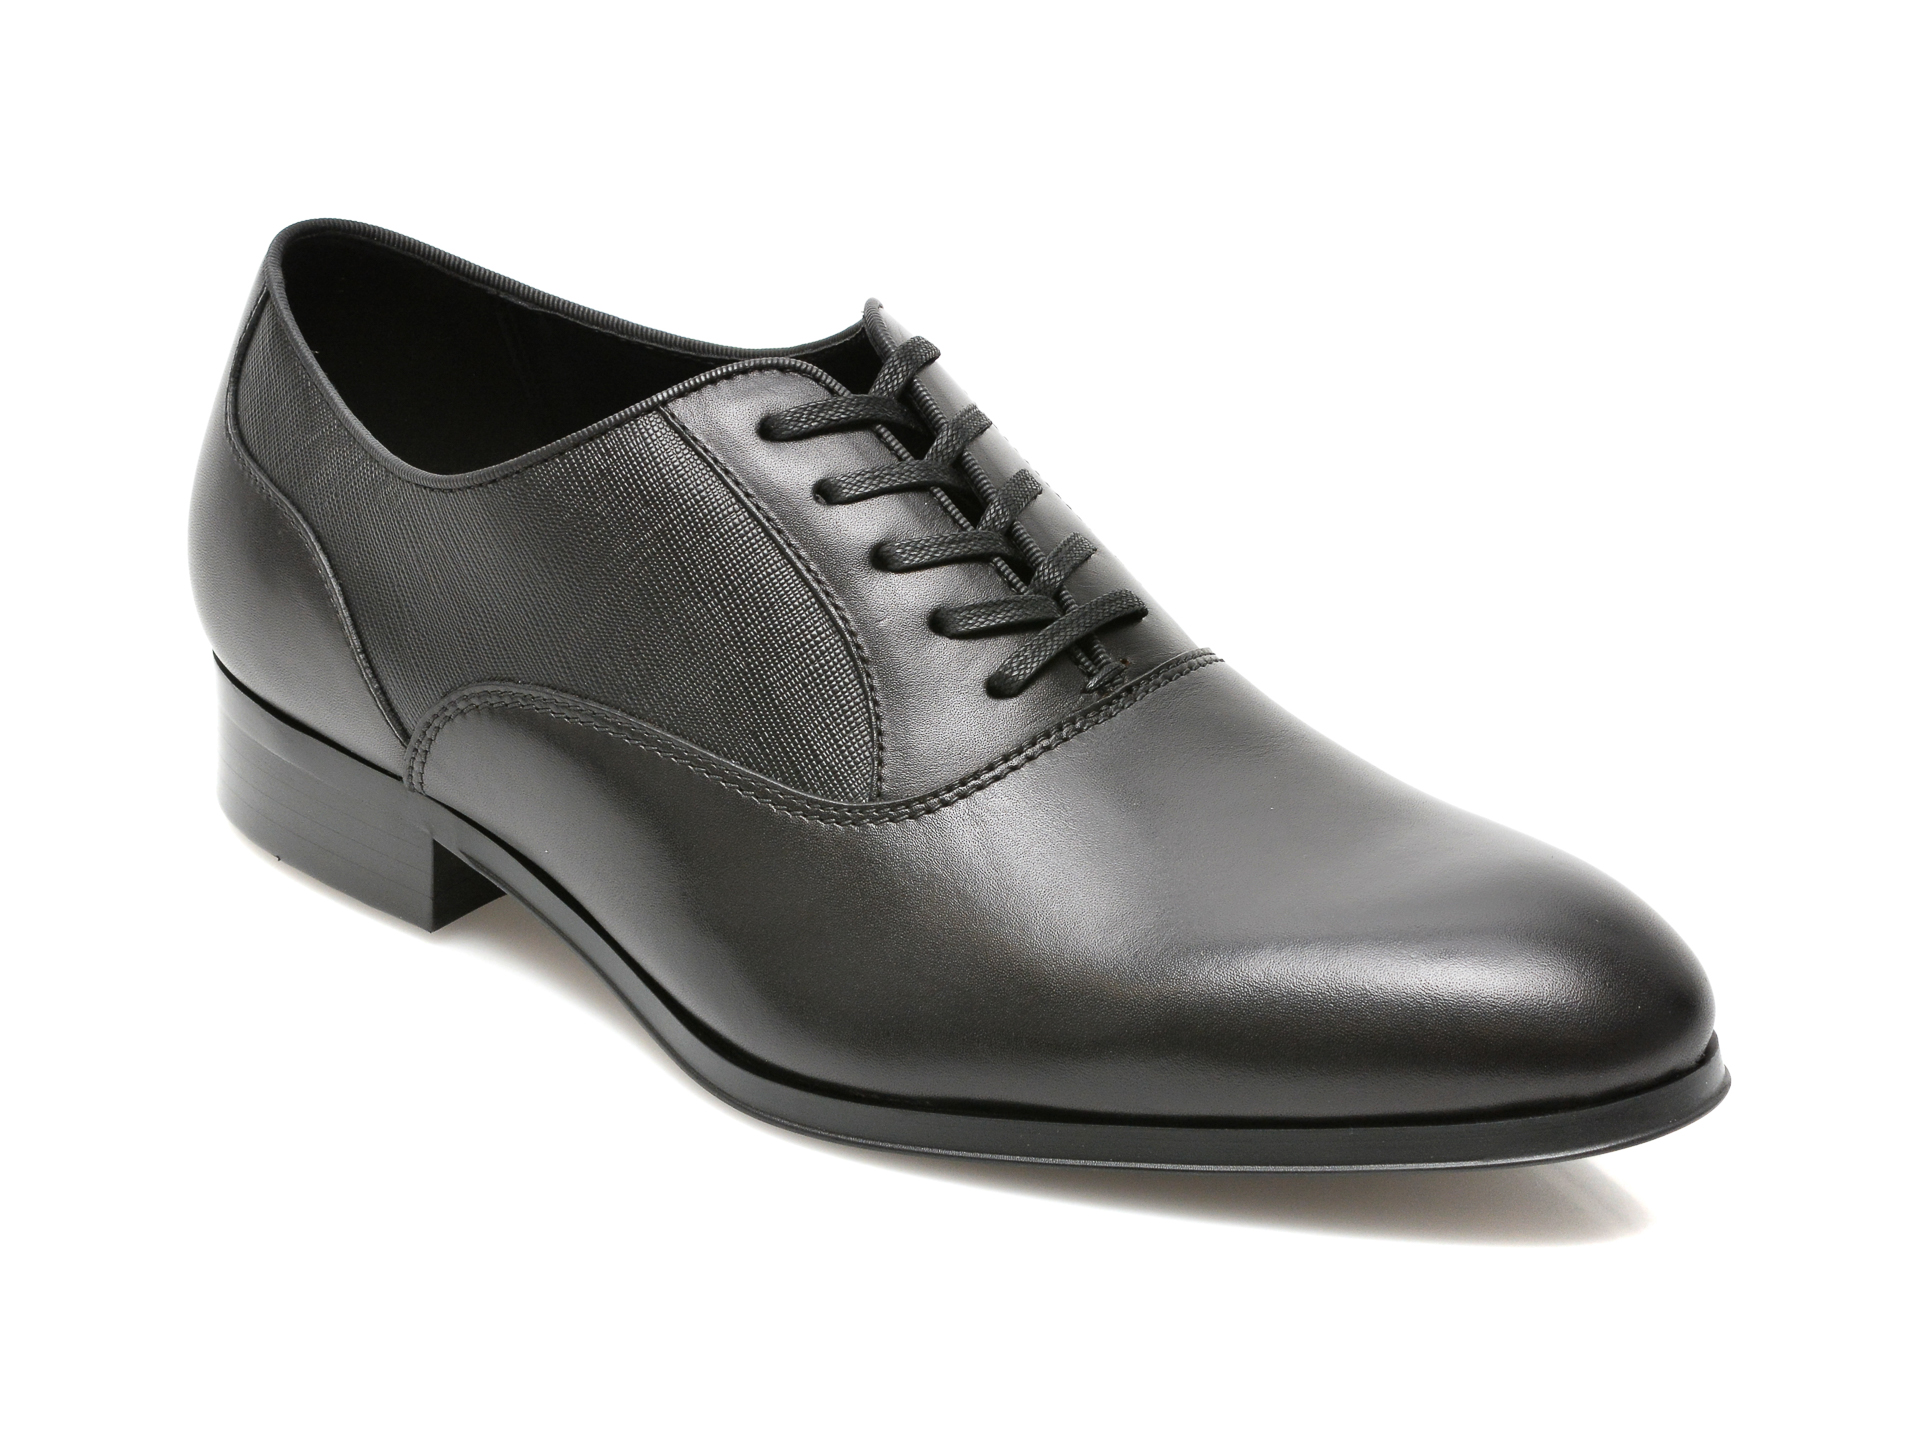 Pantofi ALDO negri, RIDGE009, din piele naturala Aldo Aldo